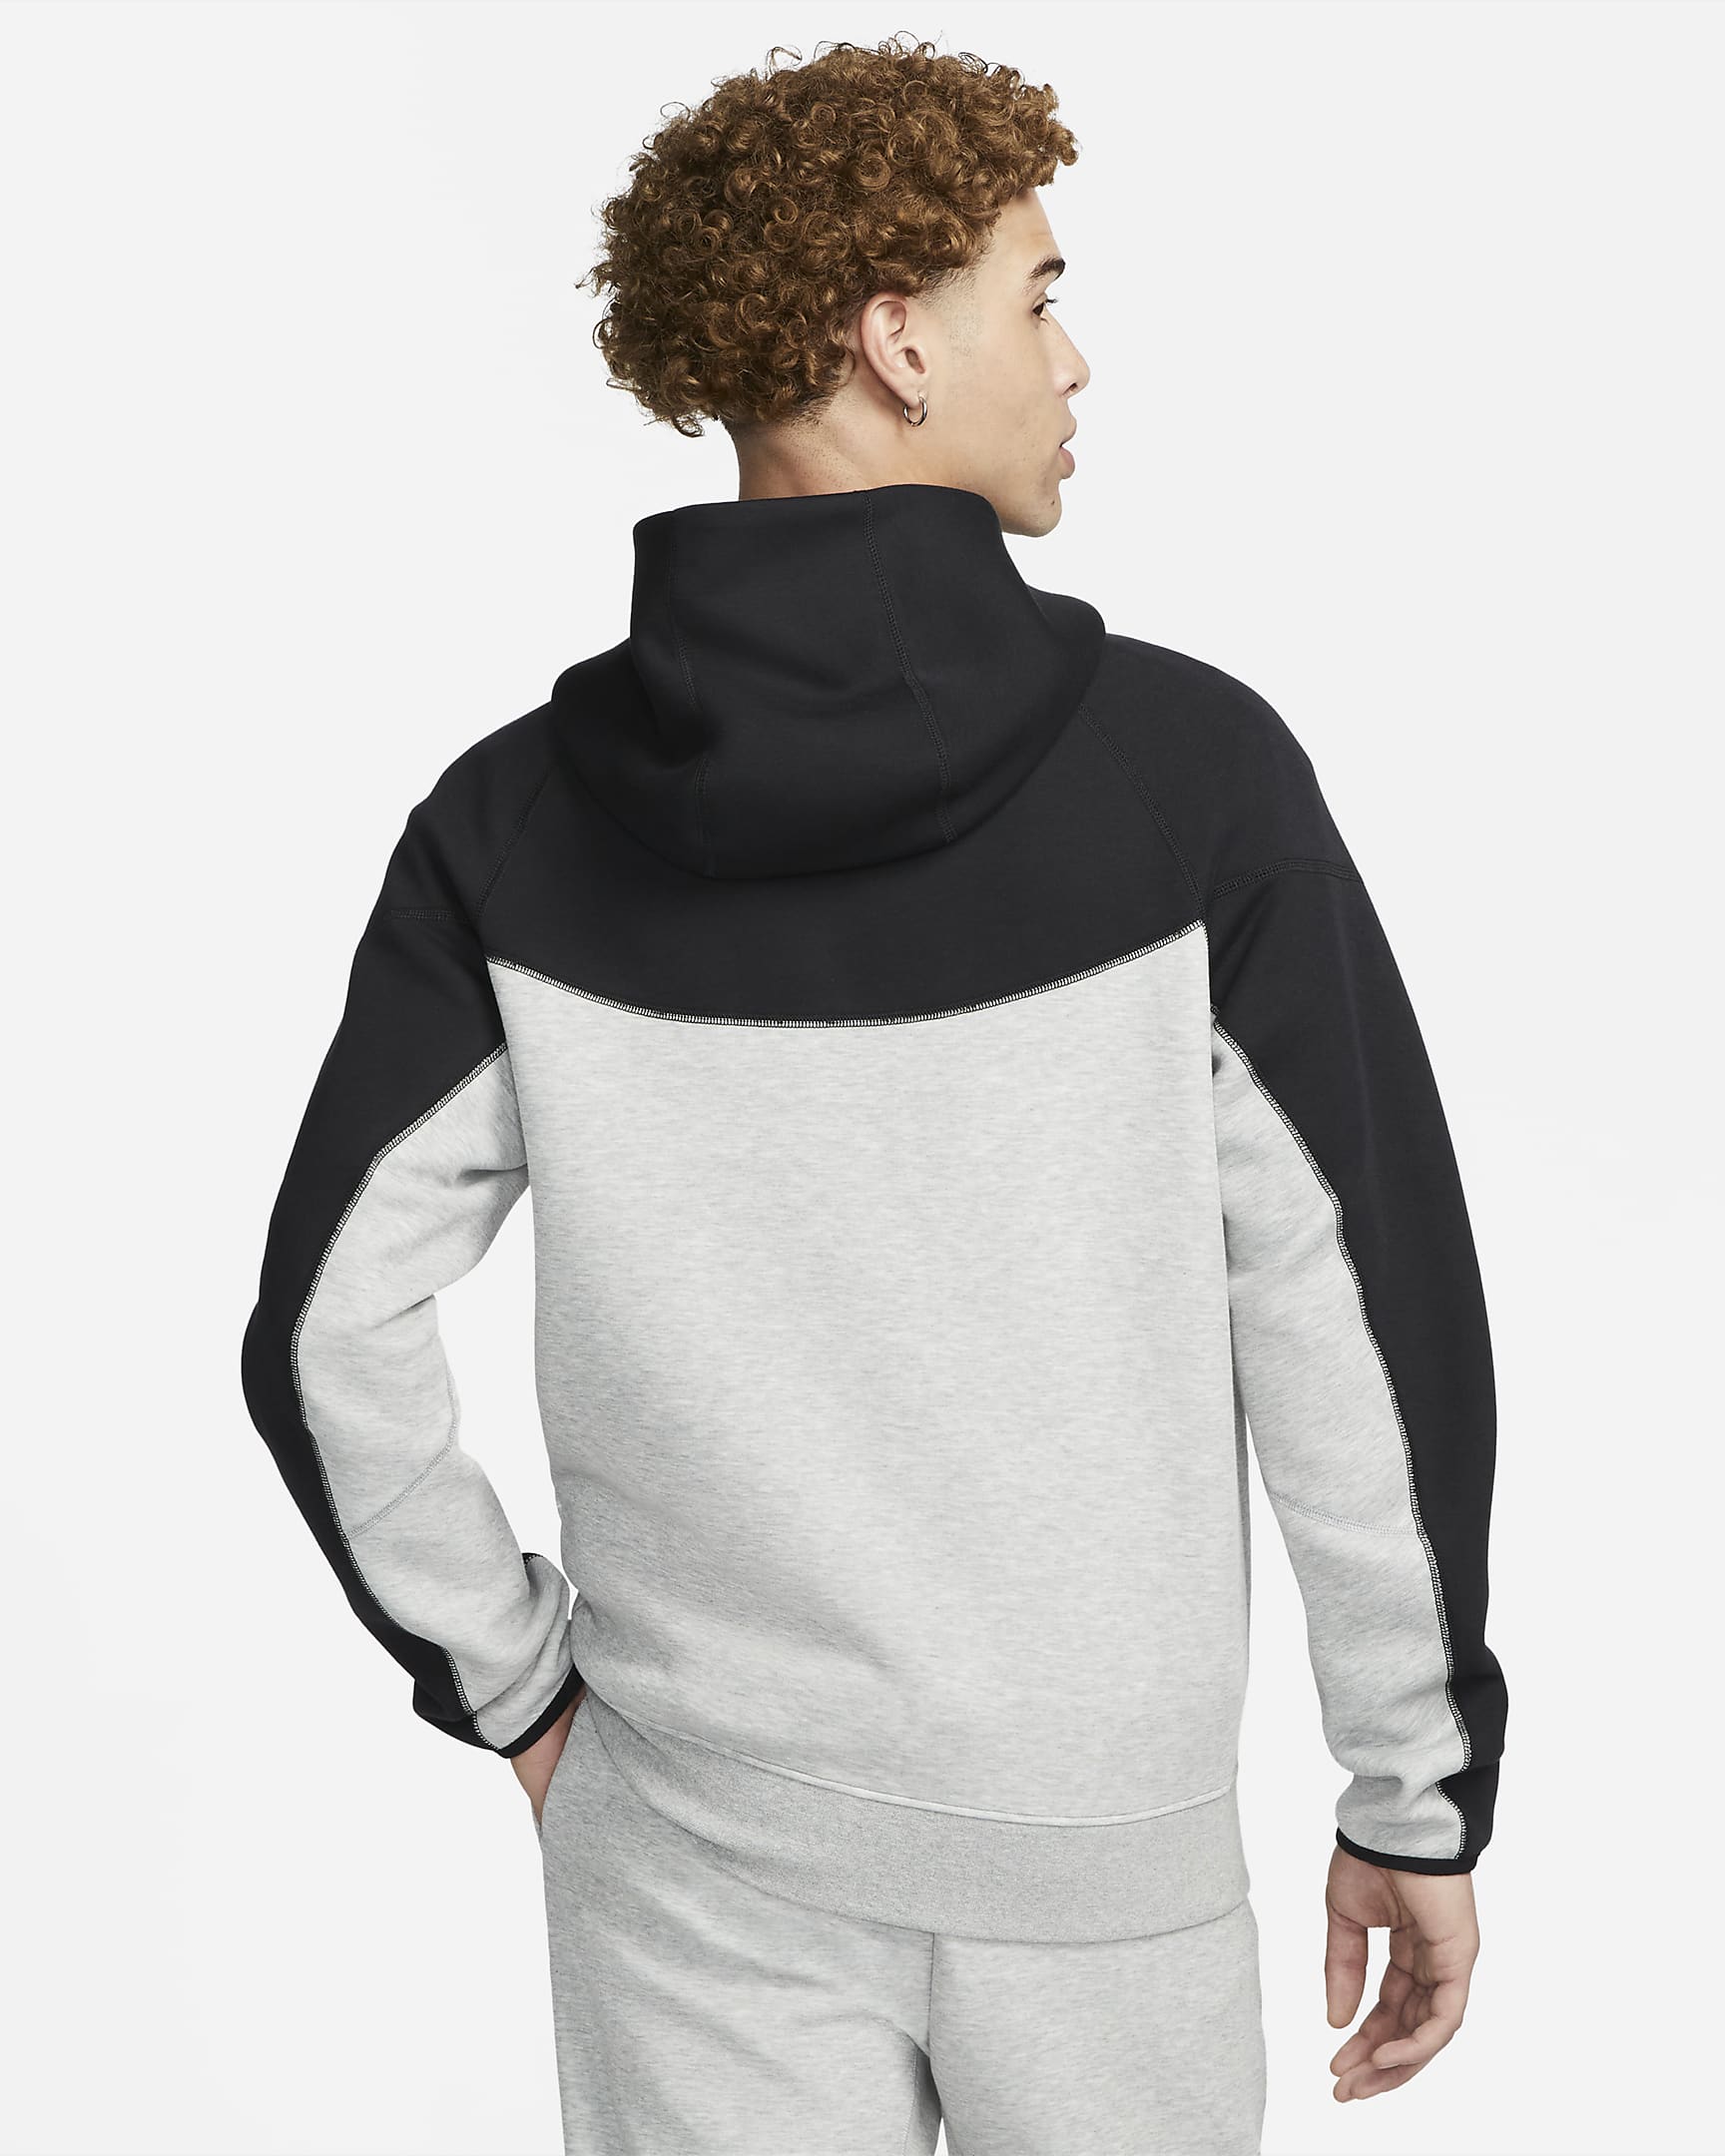 Nike Sportswear Tech Fleece Windrunner Men's Full-Zip Hoodie - Dark Grey Heather/Black/White